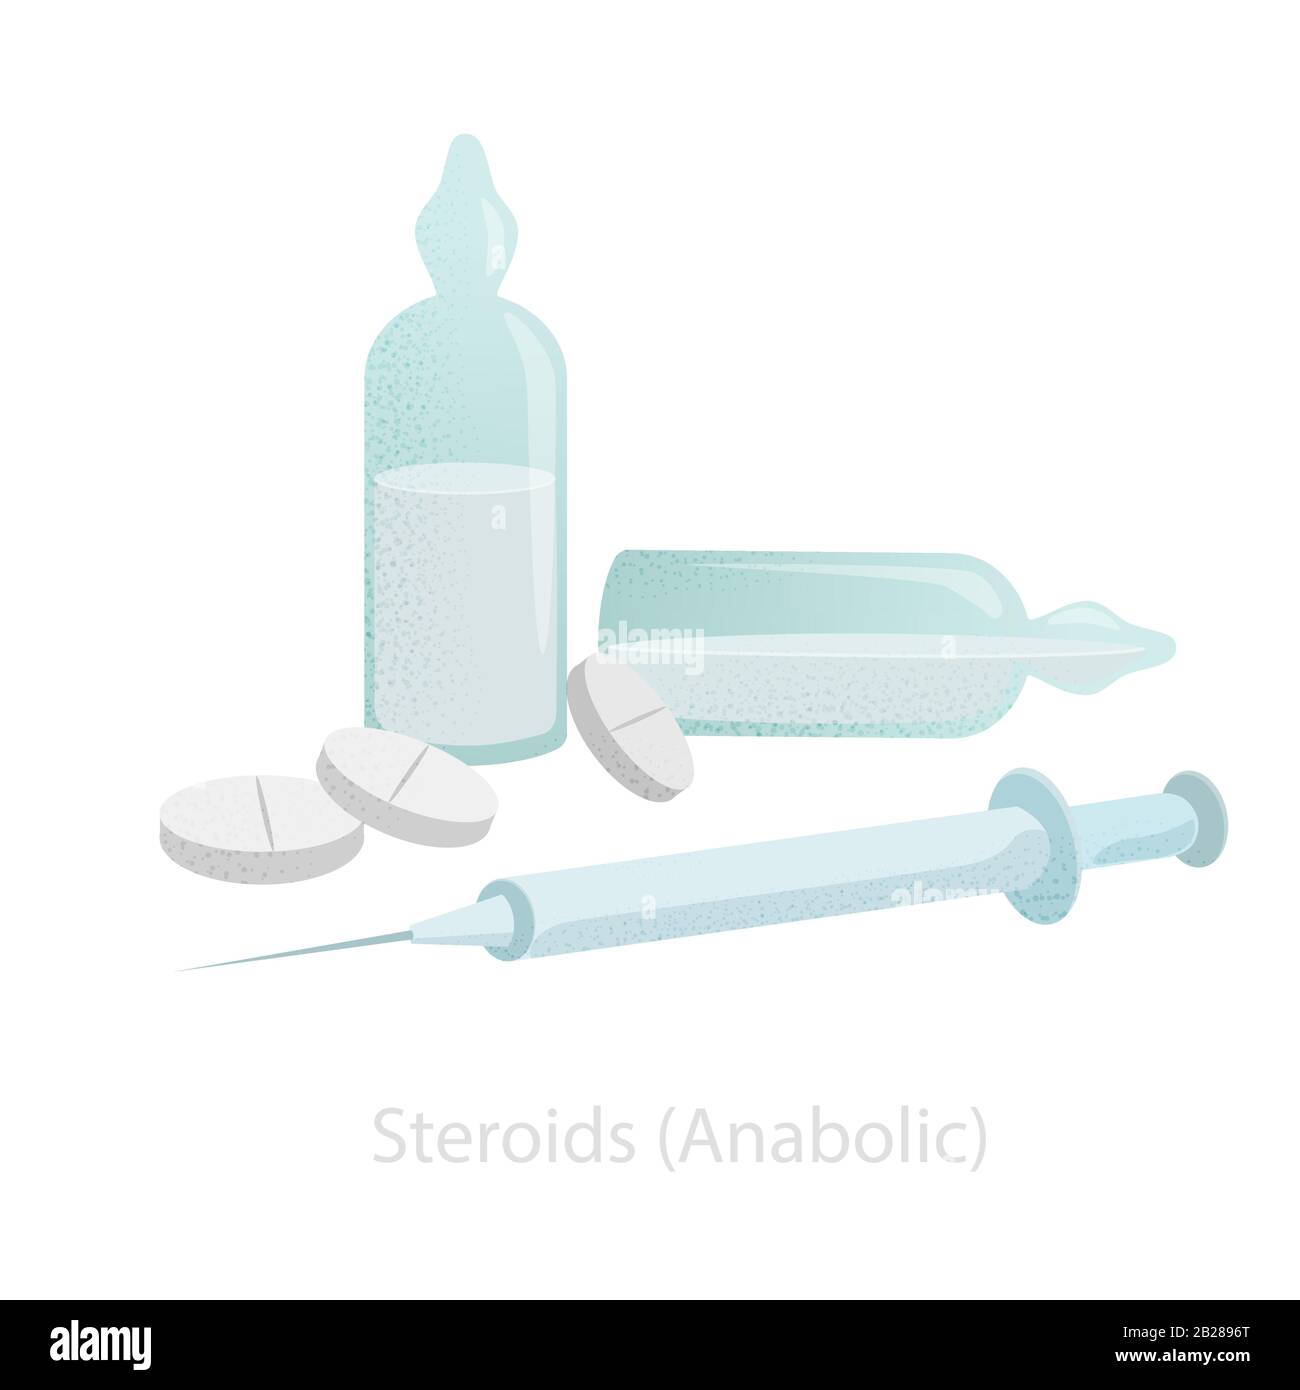 Los 10 mejores ejemplos de esteroides corticoides